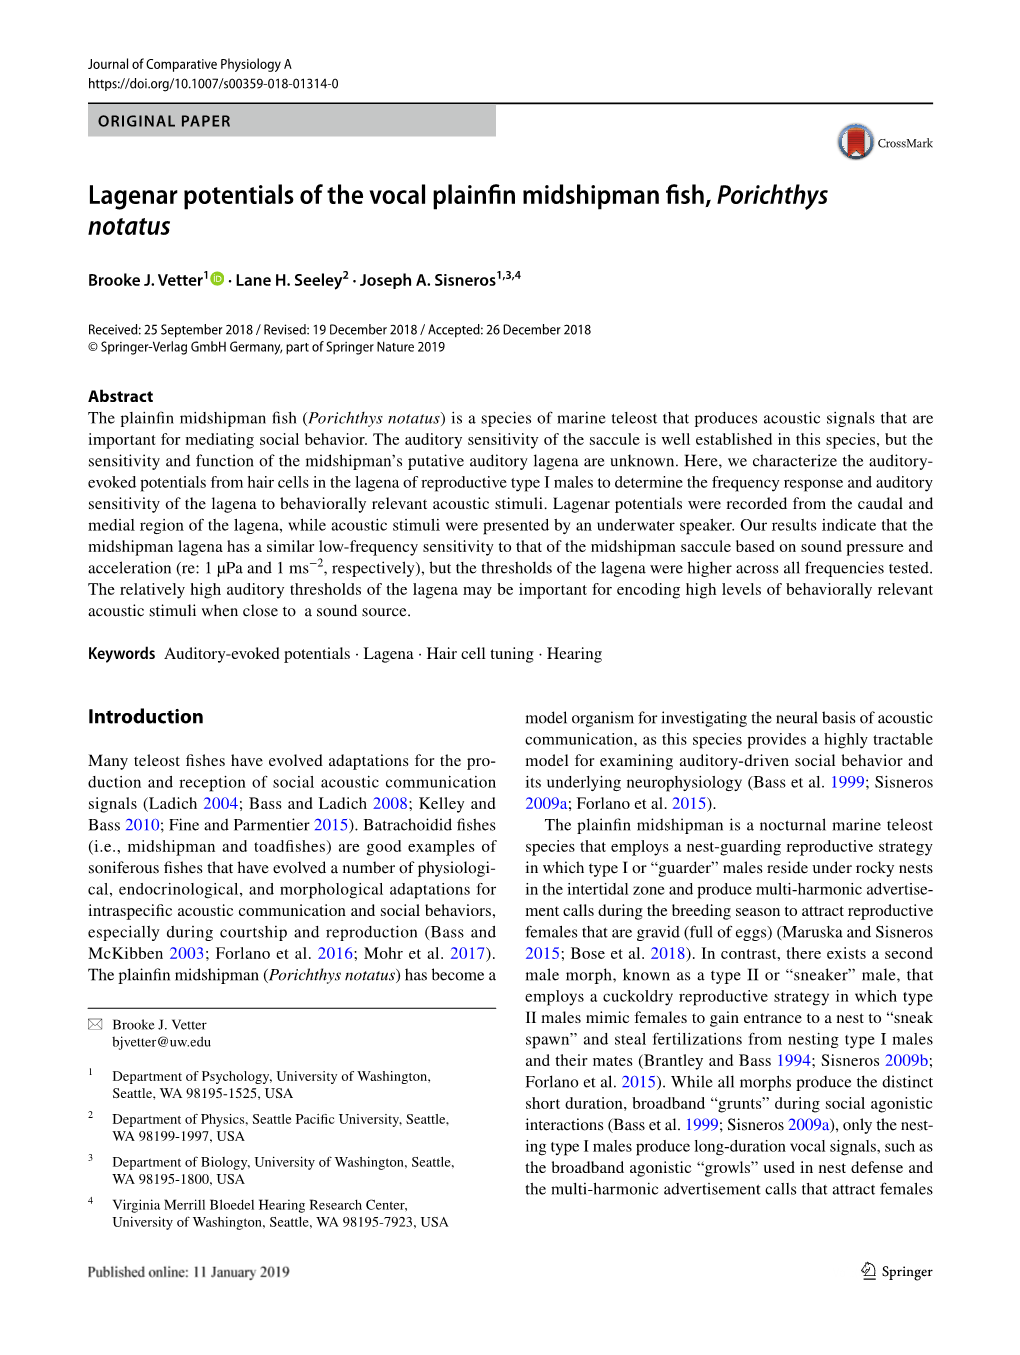 Lagenar Potentials of the Vocal Plainfin Midshipman Fish, Porichthys Notatus